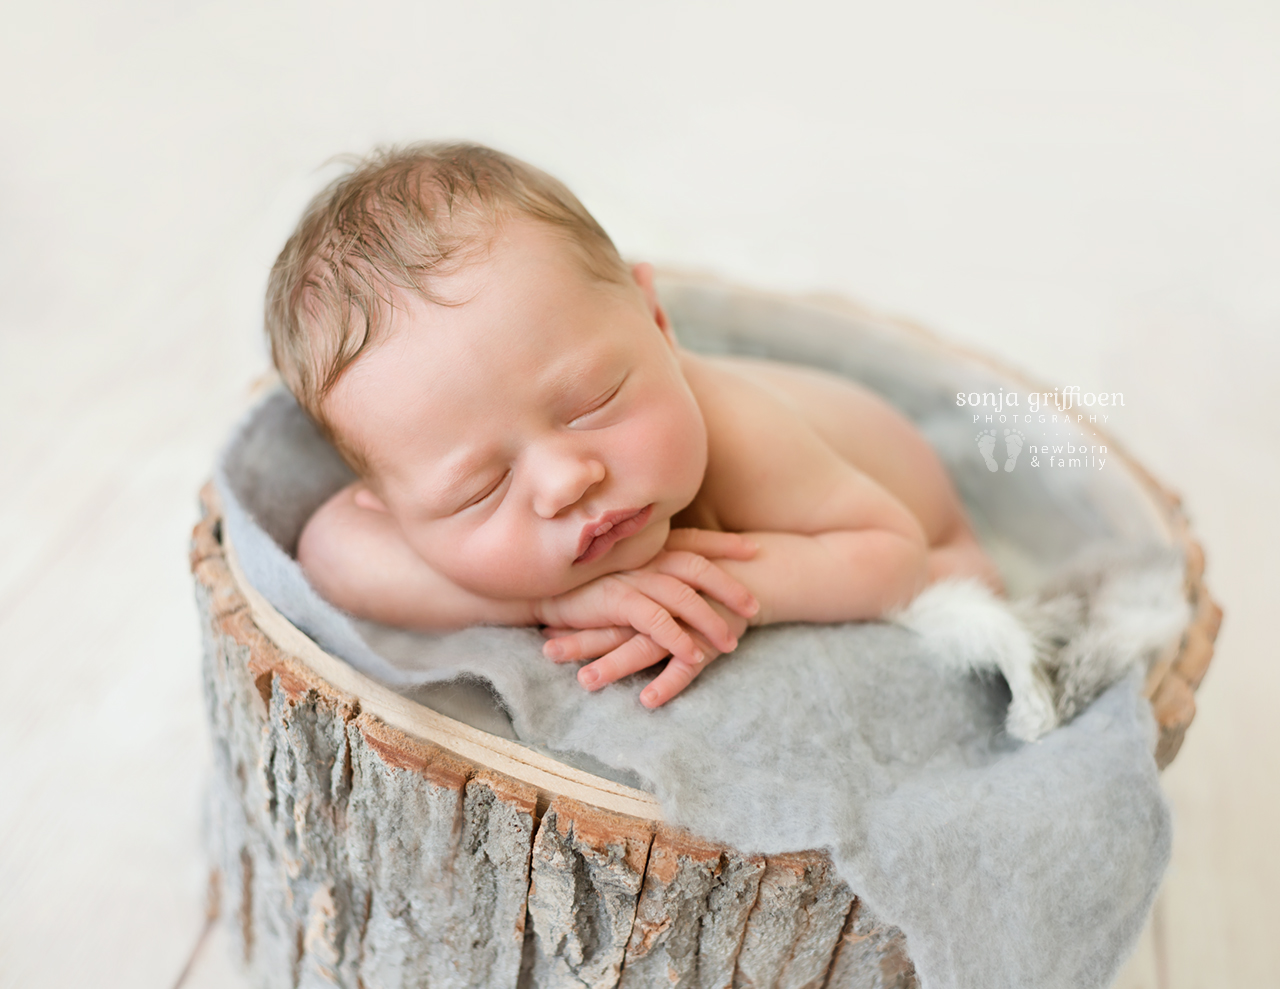 Michelle-Ivy-Newborn-Brisbane-Newborn-Photographer-Sonja-Griffioen-10.jpg